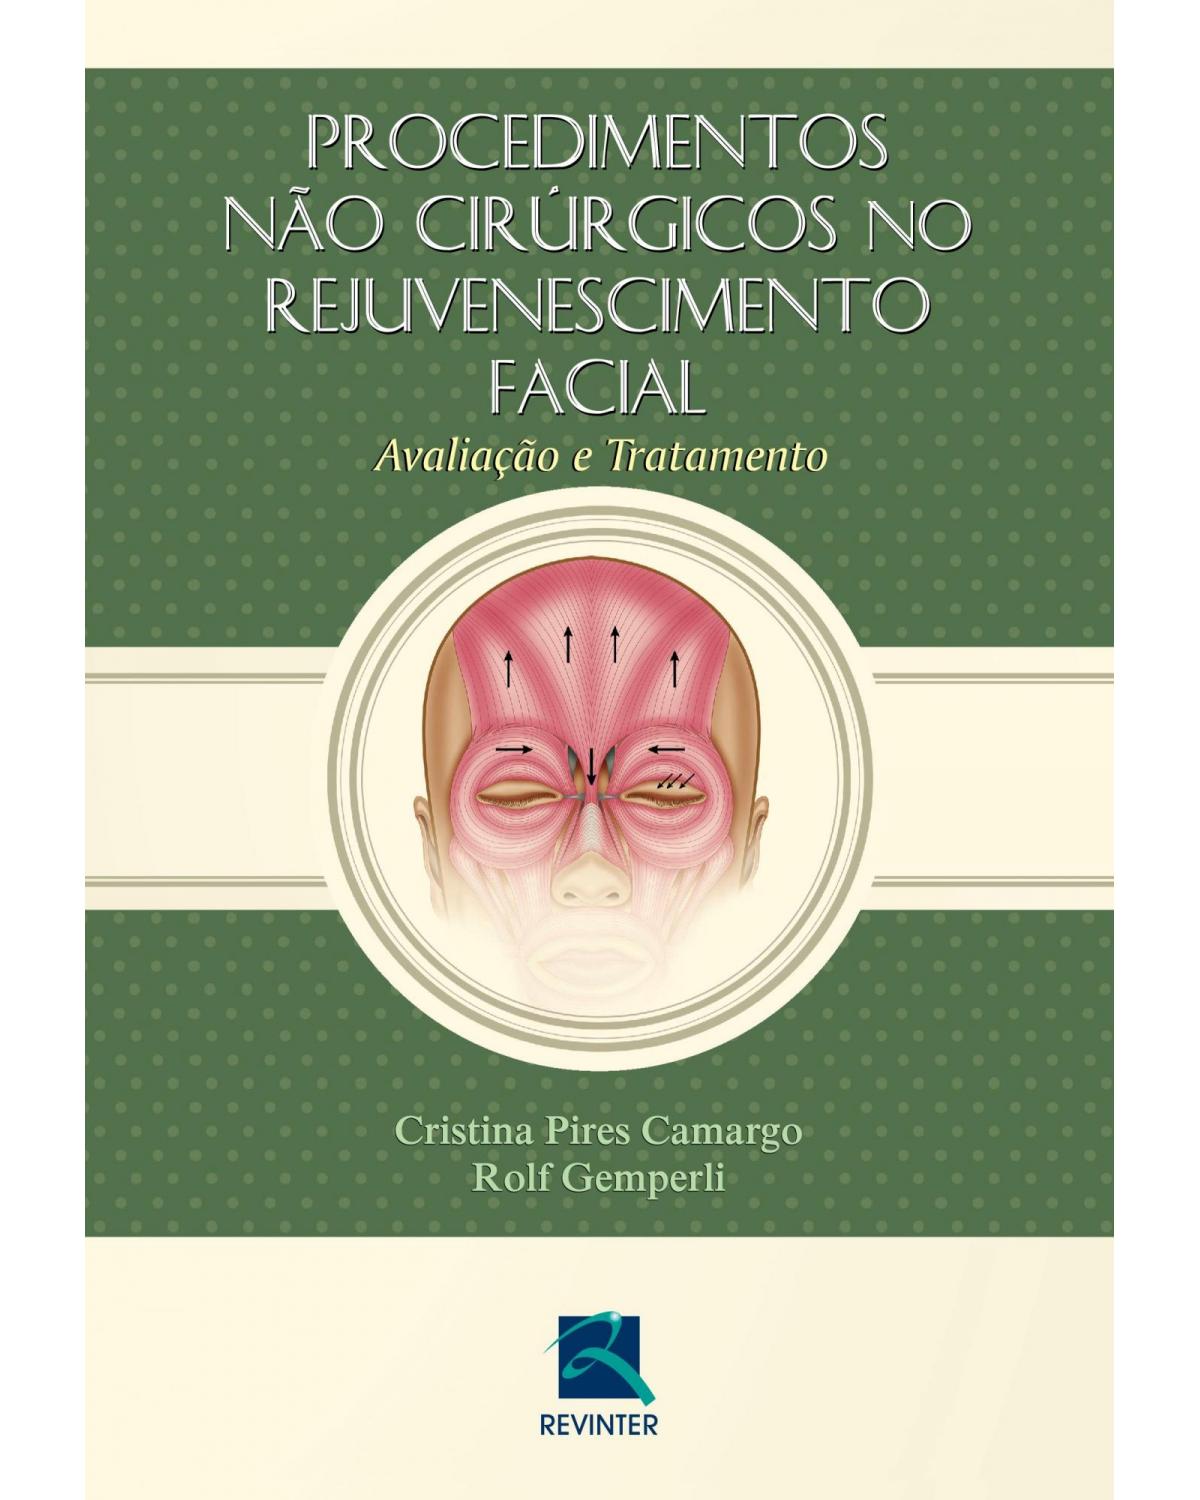 Procedimentos não cirúrgicos no rejuvenescimento facial - avaliação e tratamento - 1ª Edição | 2015